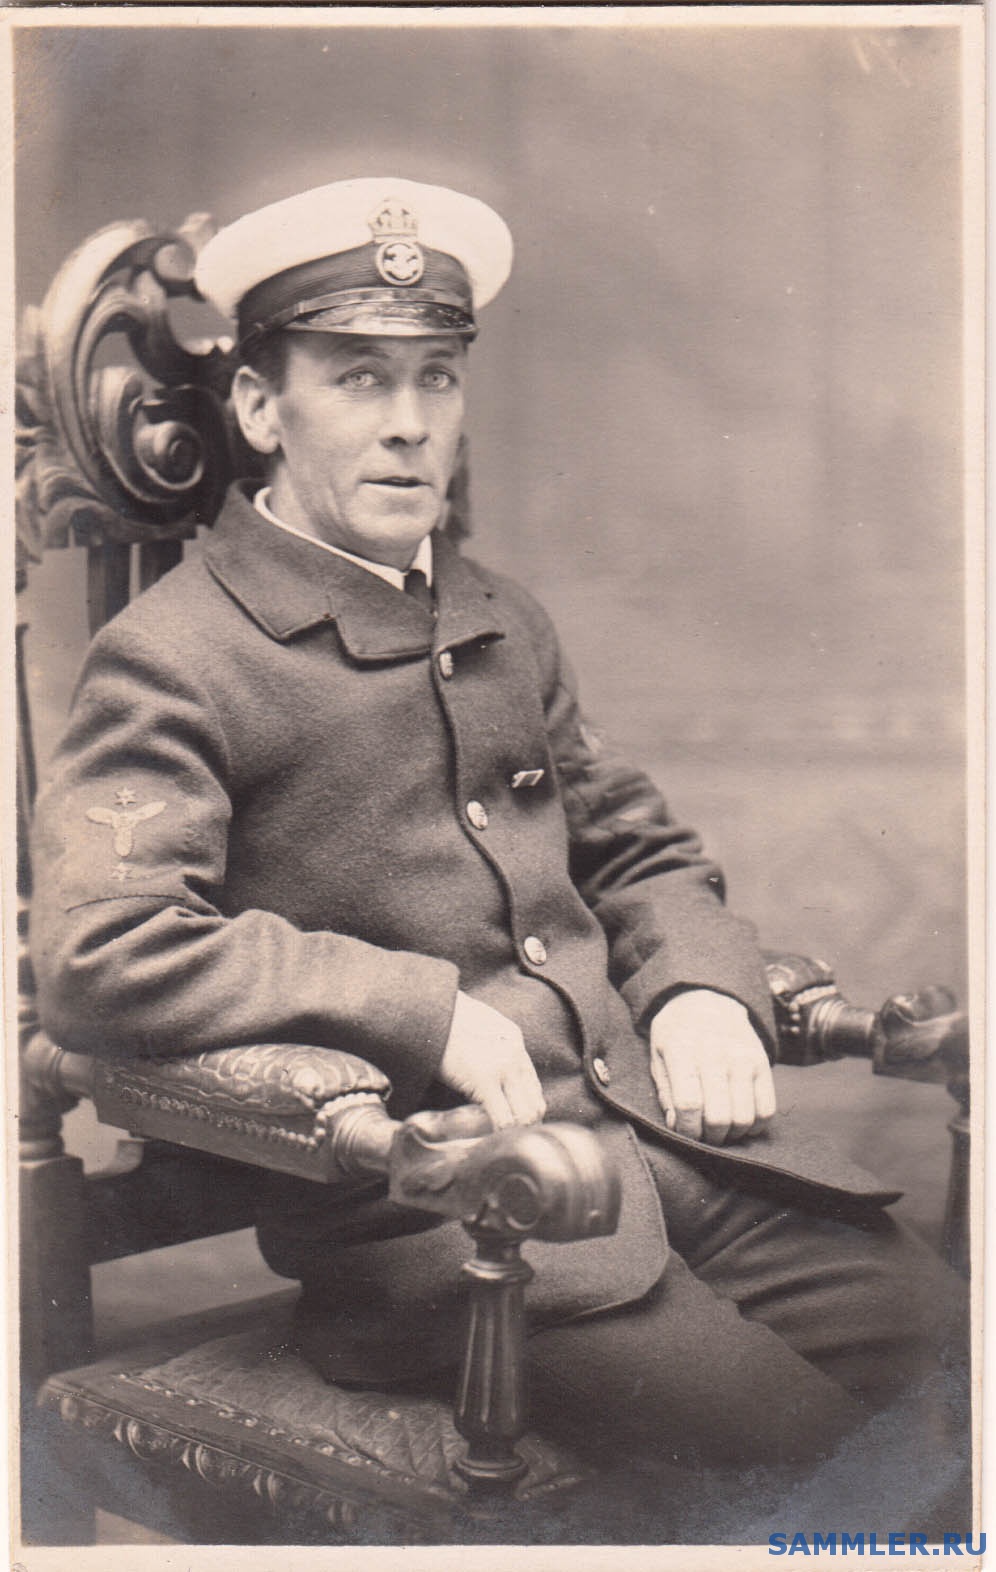 Chief_Petty_Officer_Mechanician__1906_1914.jpg